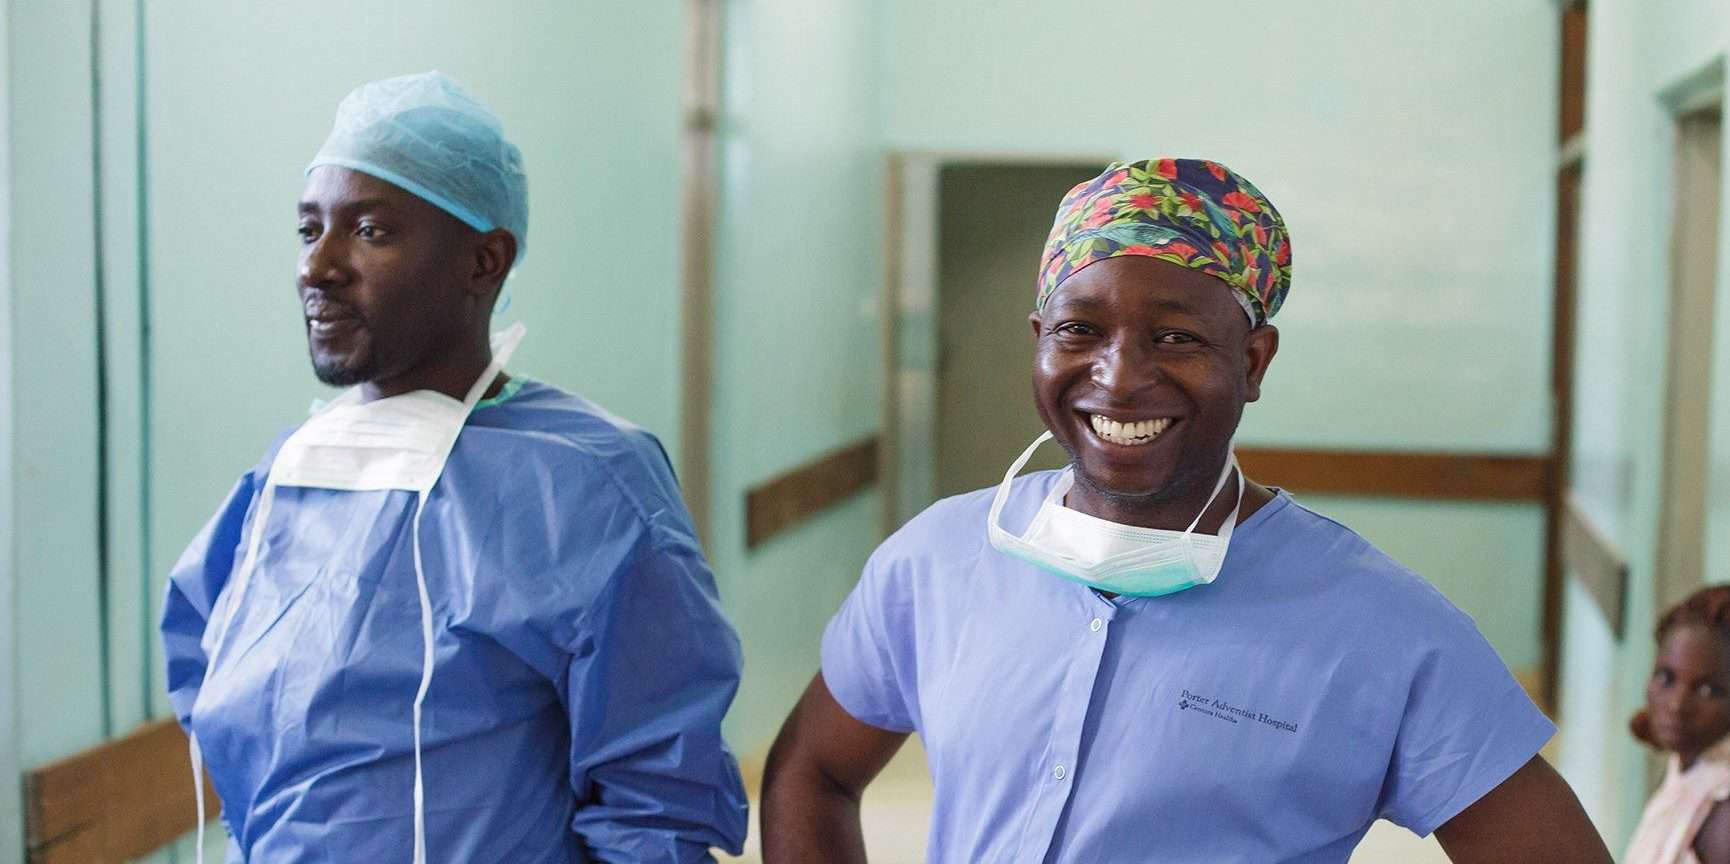 Kenyan surgeons before entering the OR